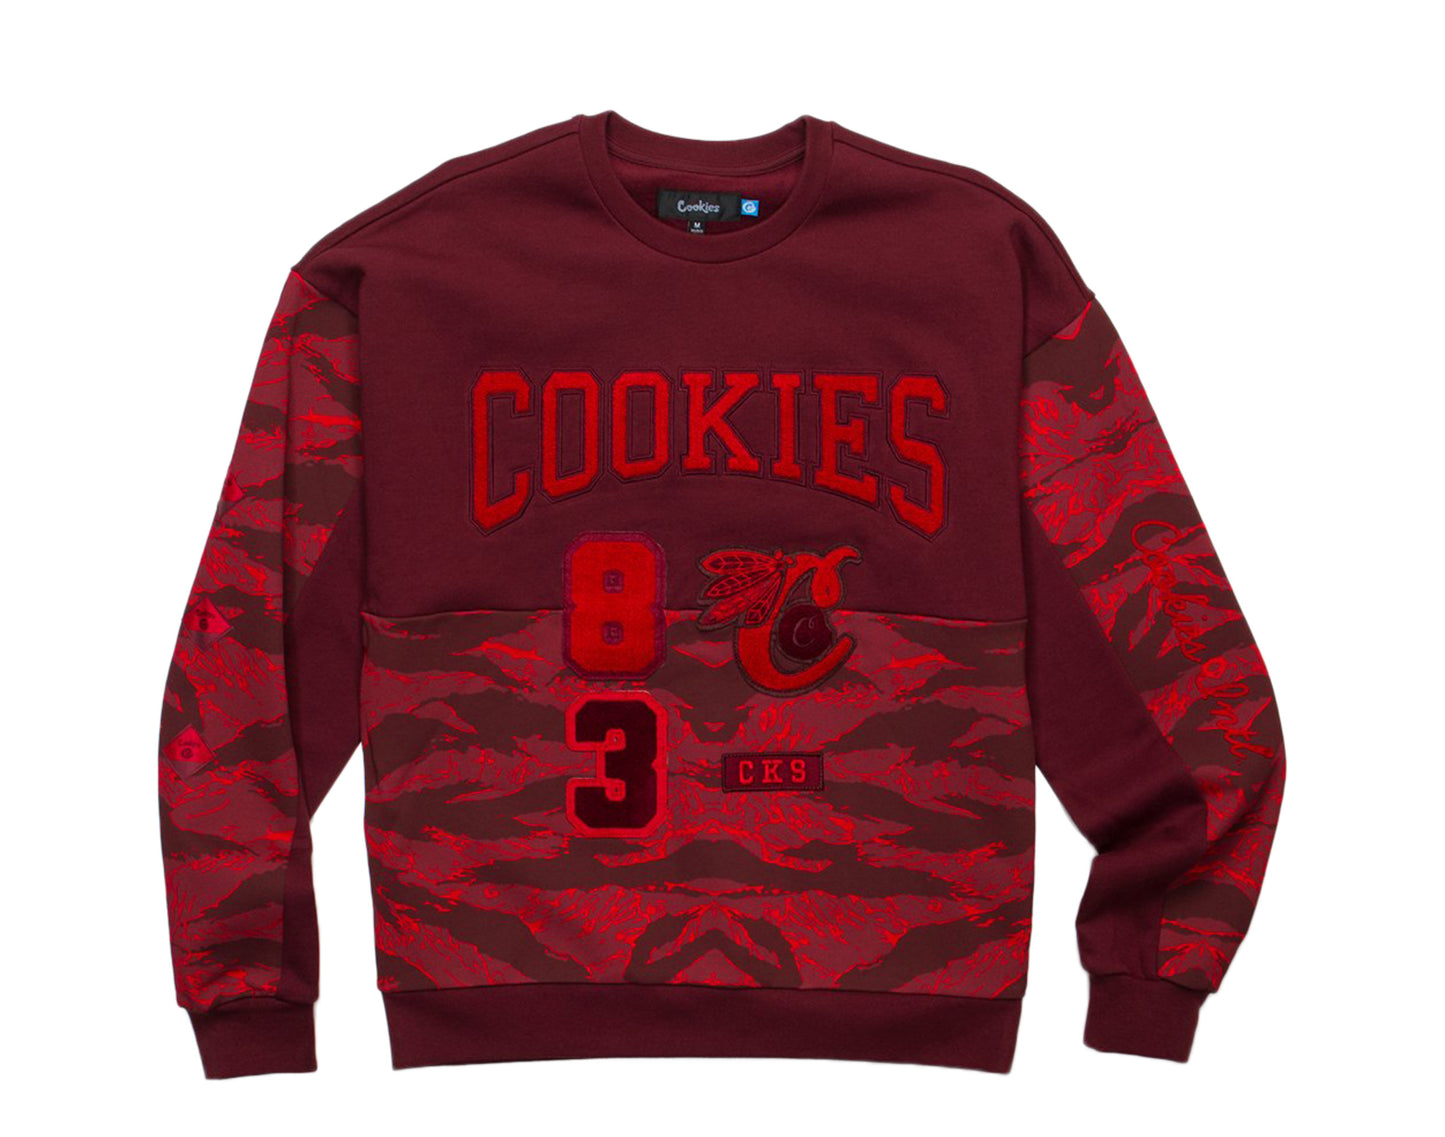 Cookies Top Of The Key Fleece Colorblocked Red Men's Crewneck 1546C4347-RED